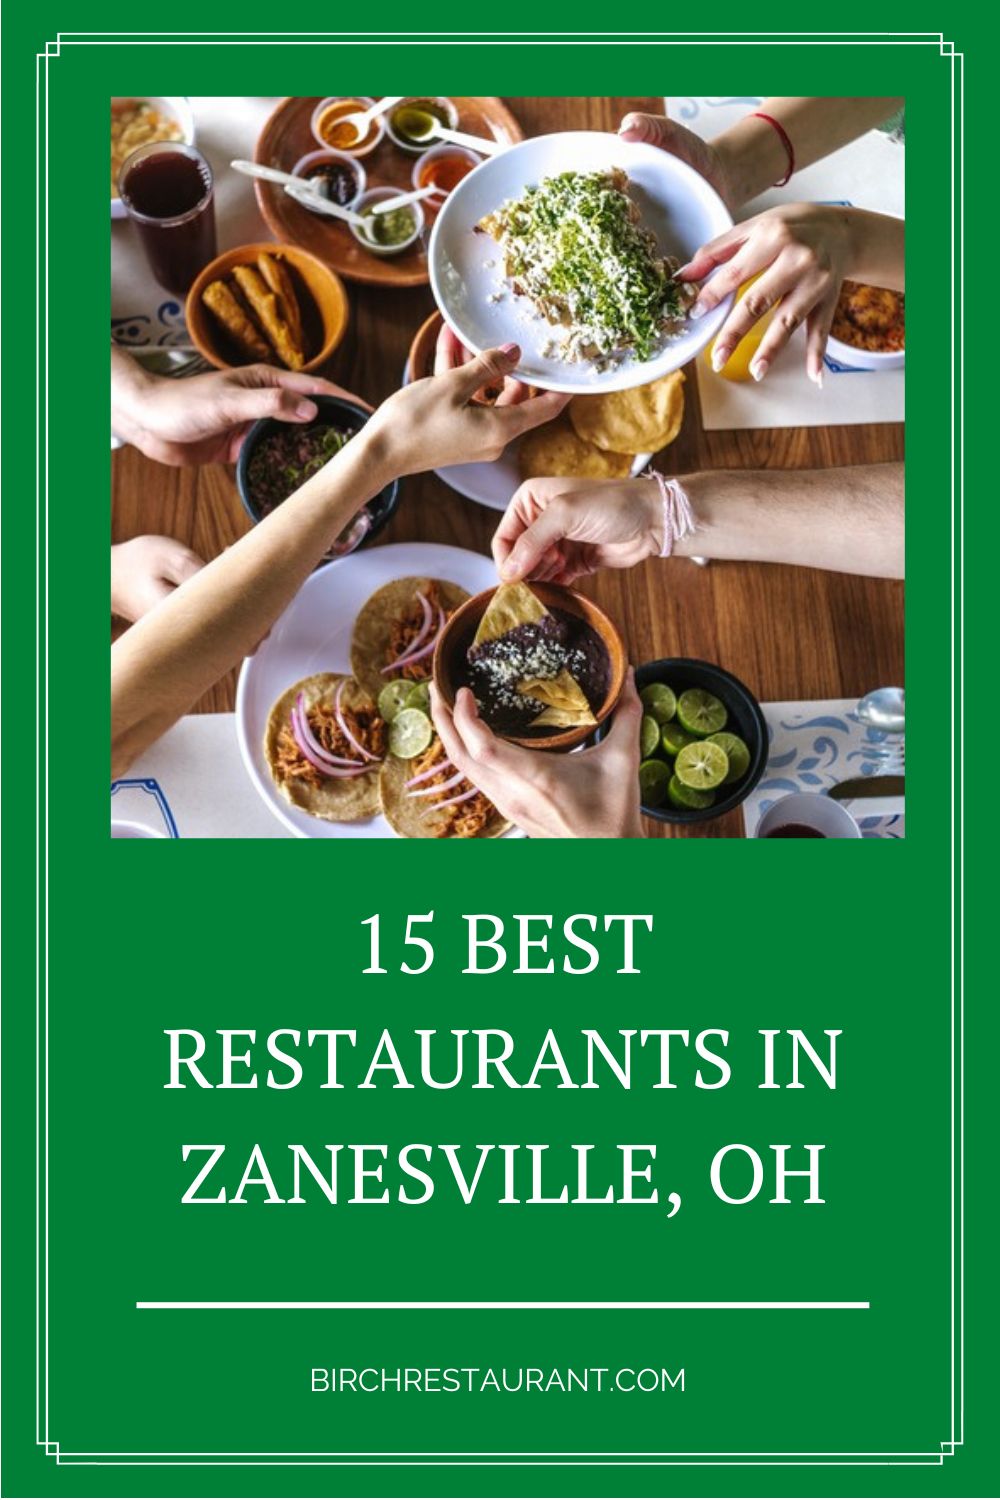 Best Restaurants in Zanesville